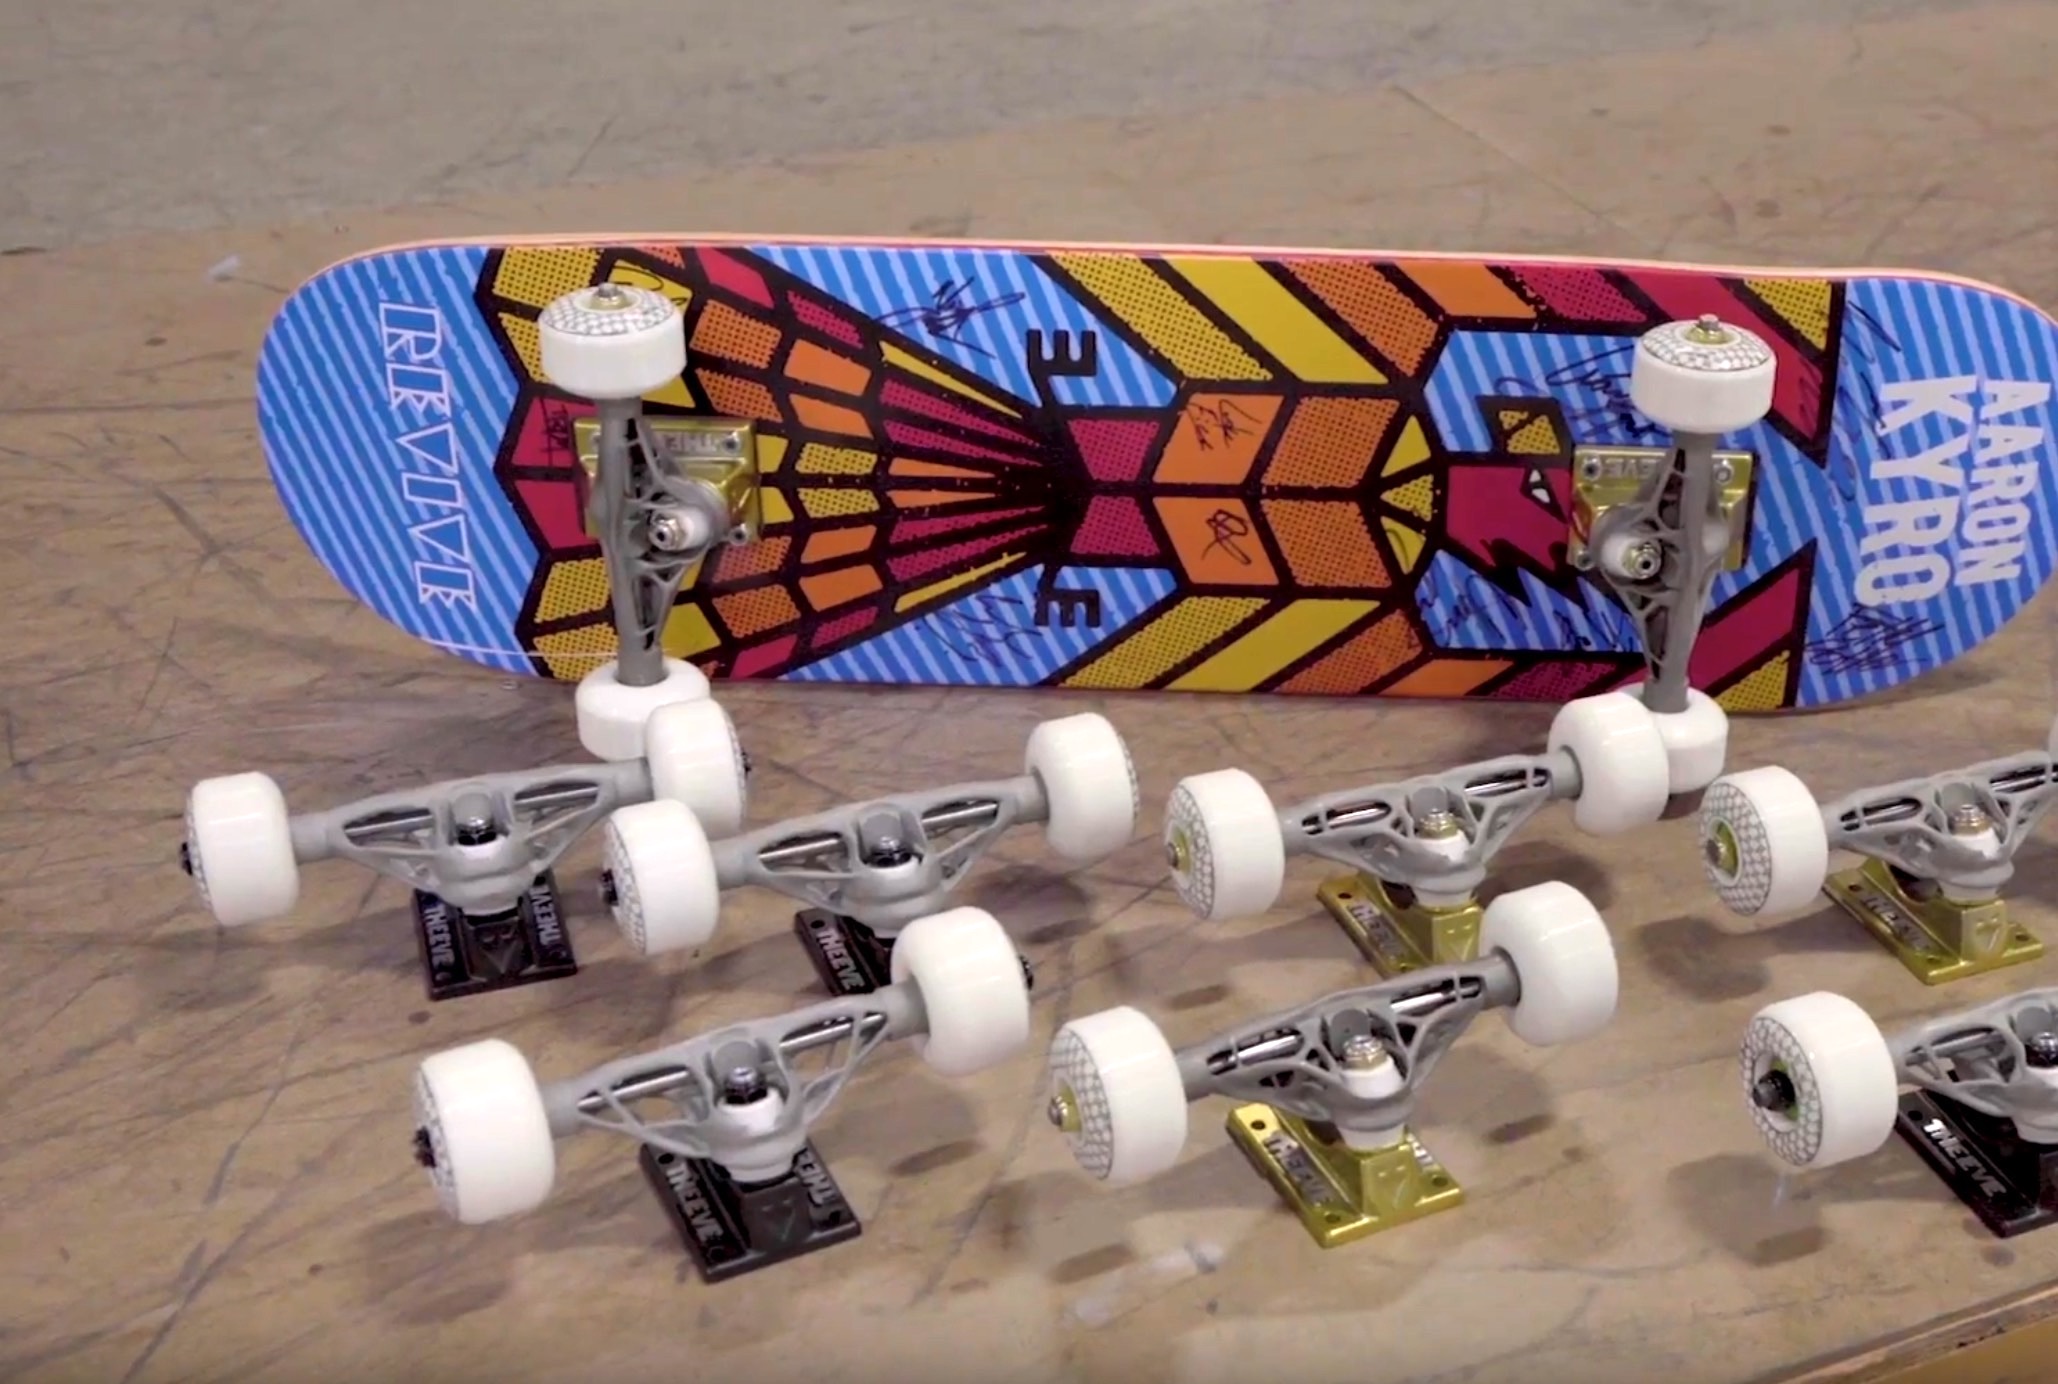 braille-skateboarding-autodesk-titanium-skate-trucks